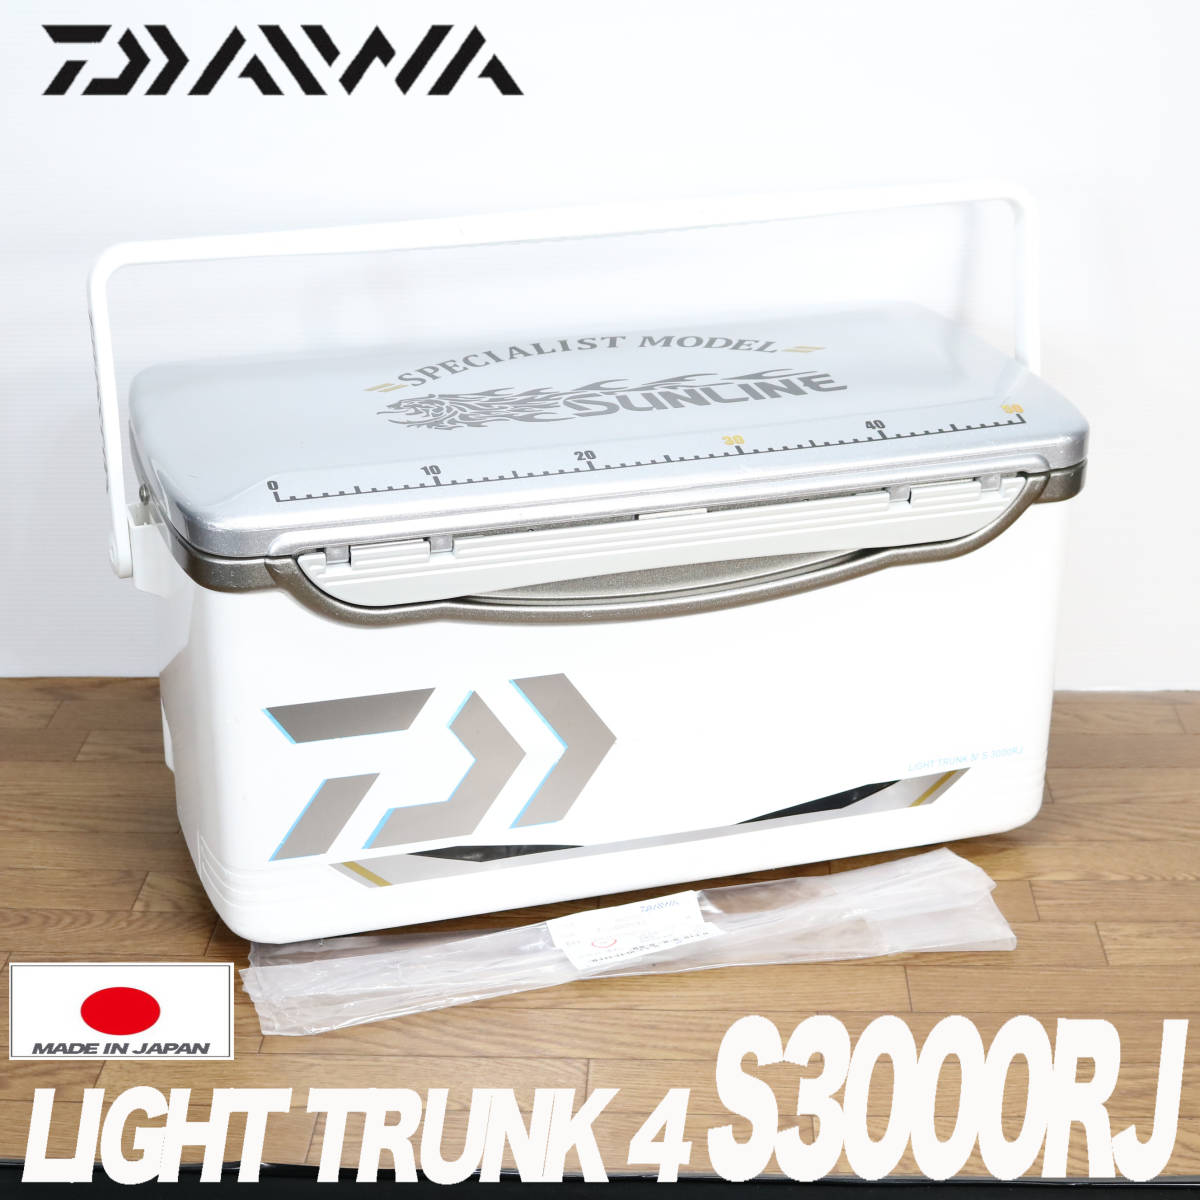 程度良好 ダイワ (DAIWA) ライトトランク4 S-3000RJ スーパー軽量 クーラーボックス クールボックス_画像1